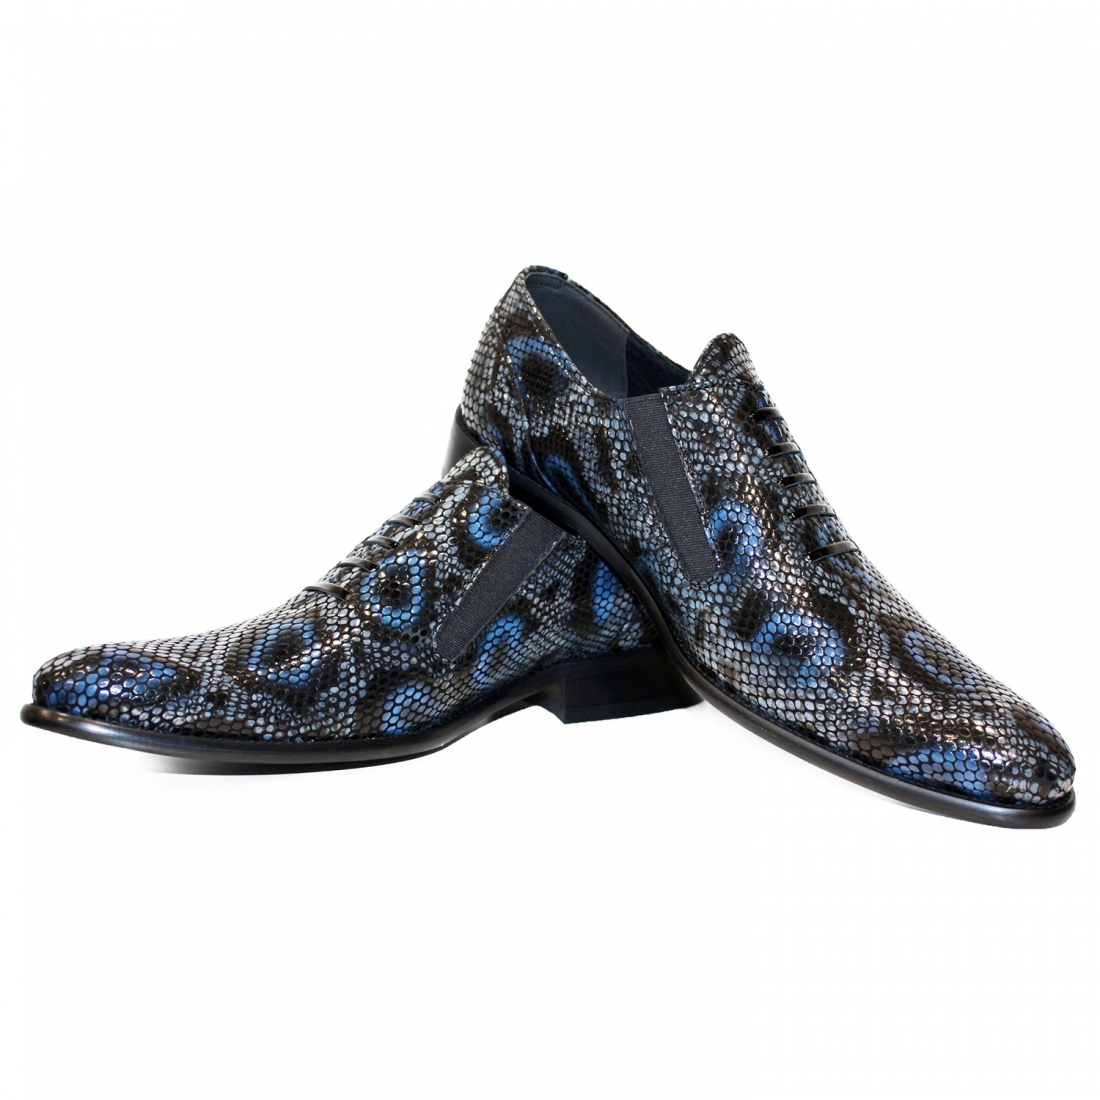 Modello Genoblo - Slipper - Handmade Colorful Italian Leather Shoes